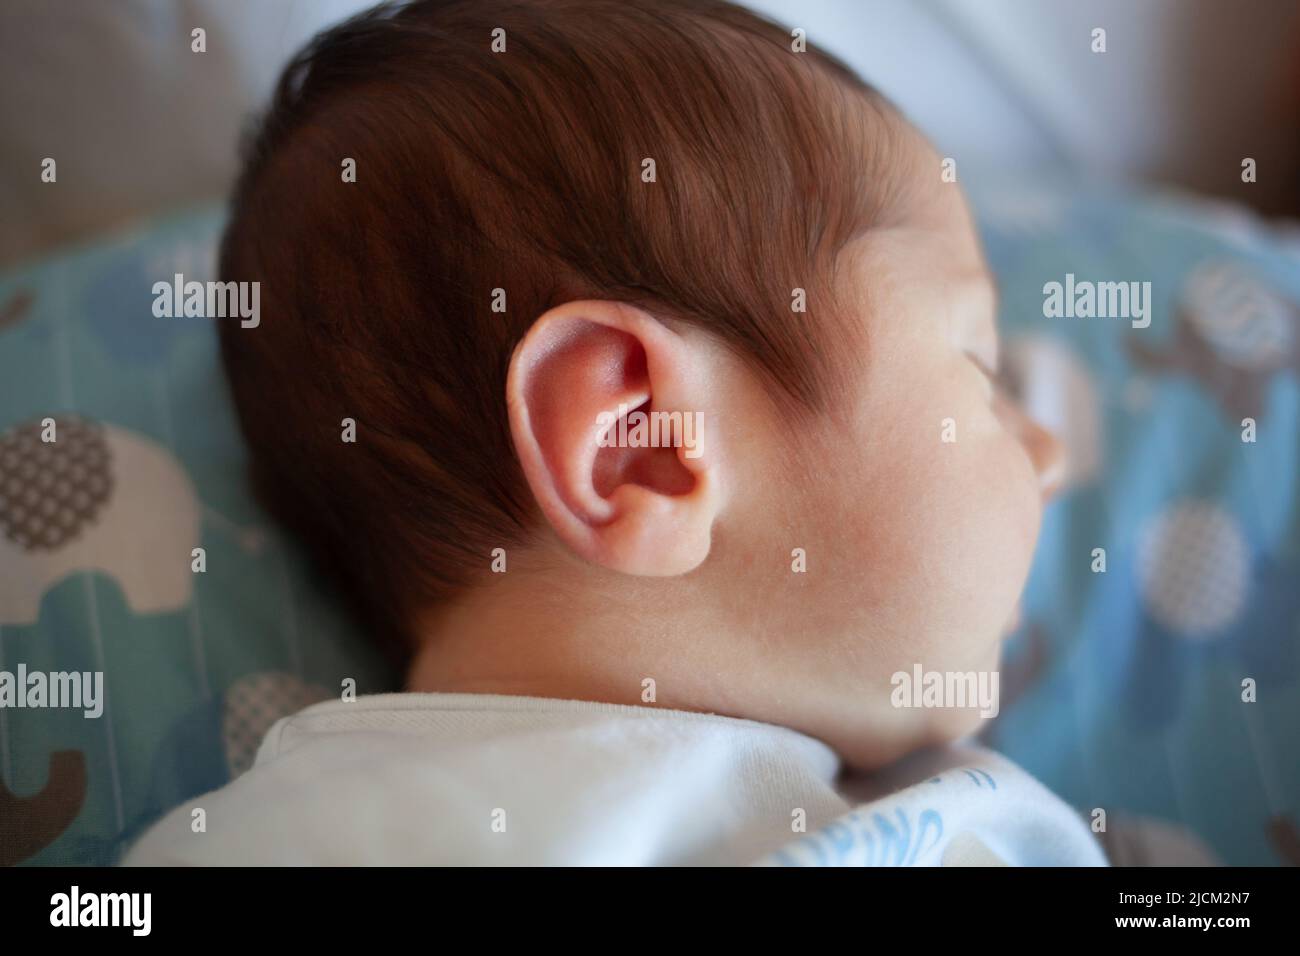 Detalle del oído de un recién nacido. Concepto médico sobre el aparato auditivo. Foto de stock